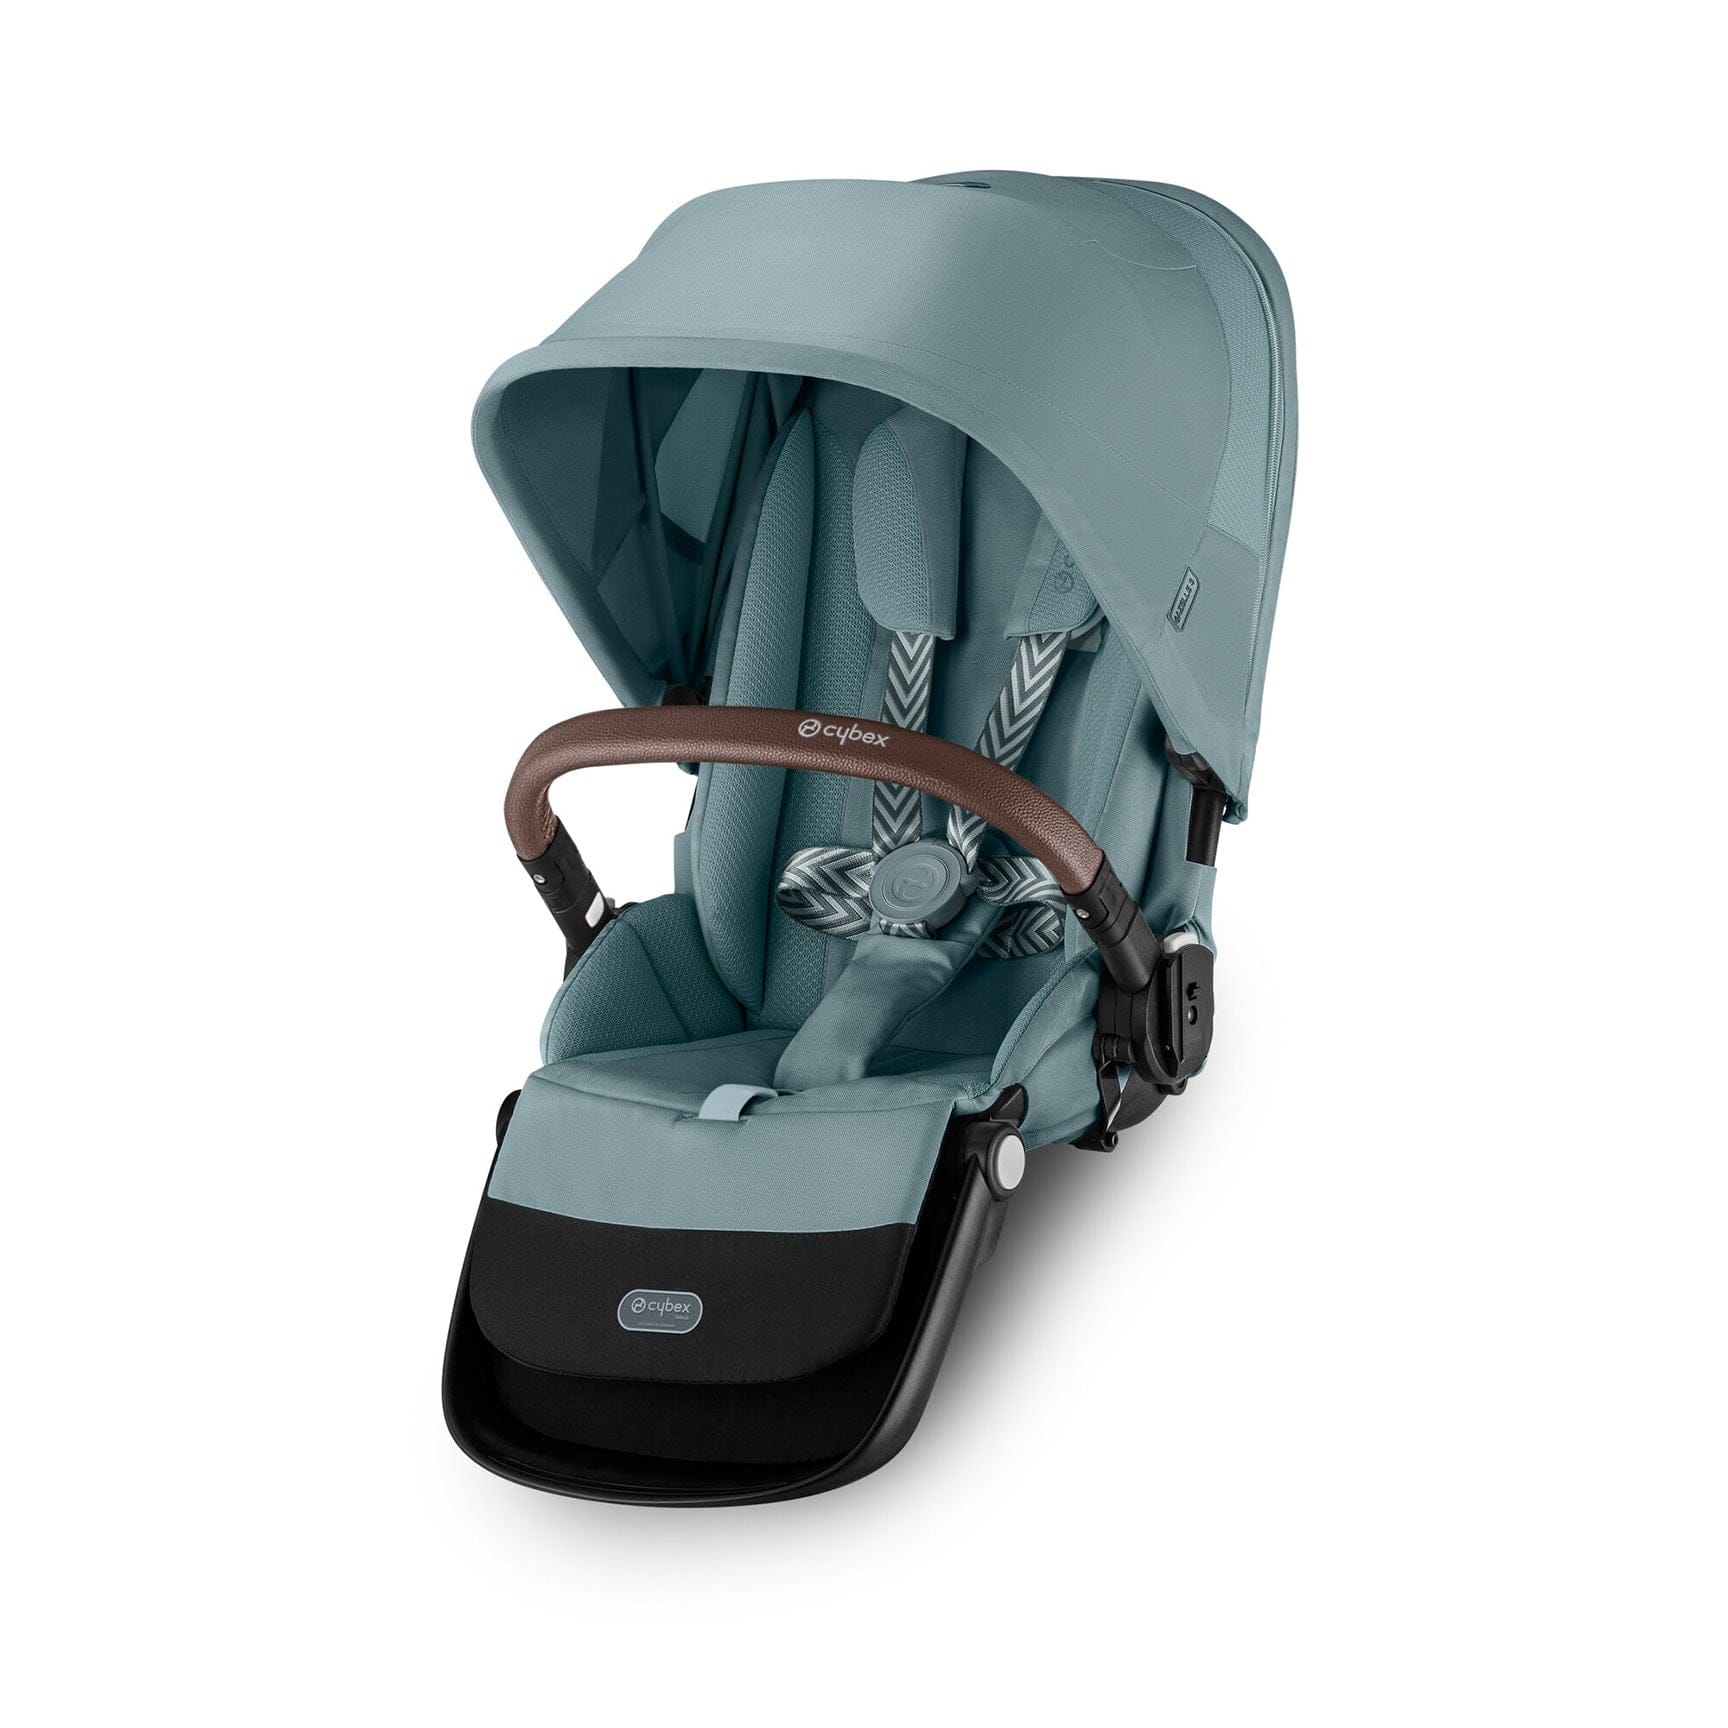 Cybex baby prams Cybex Gazelle S Seat Unit - Sky Blue 522002769